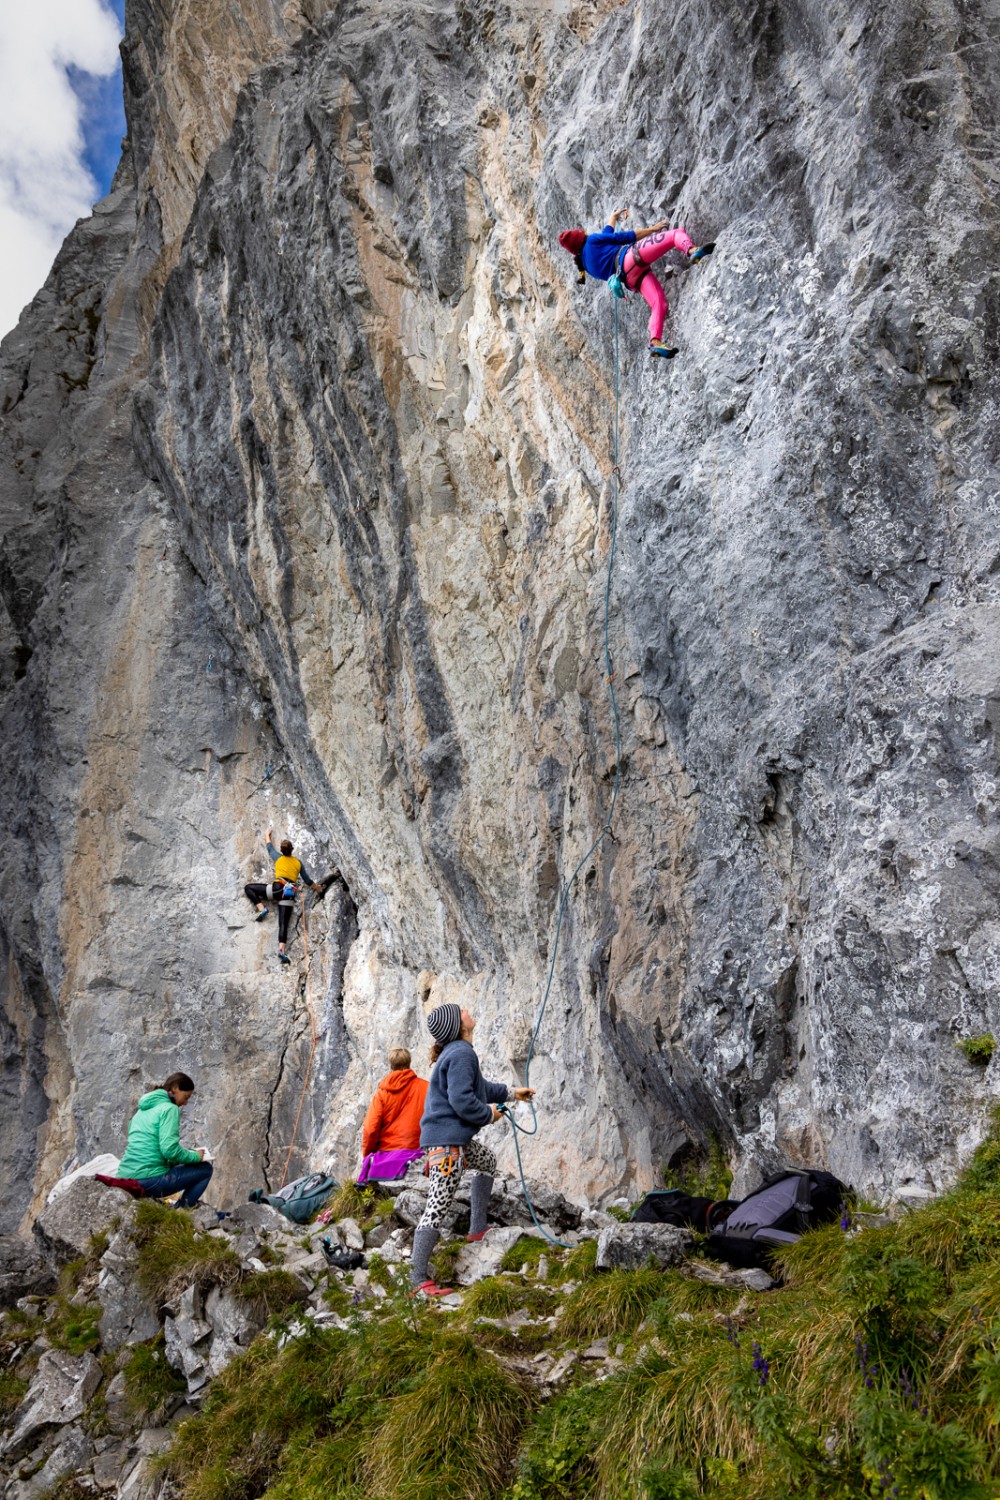 Die Gastlosen bieten unendlich viele Möglichkeiten zum Klettern. Sowohl Anfänger als auch erfahrene Kletterer kommen hier auf ihre Kosten, zum Beispiel am Gross Turm. Bild: Severin Nowacki